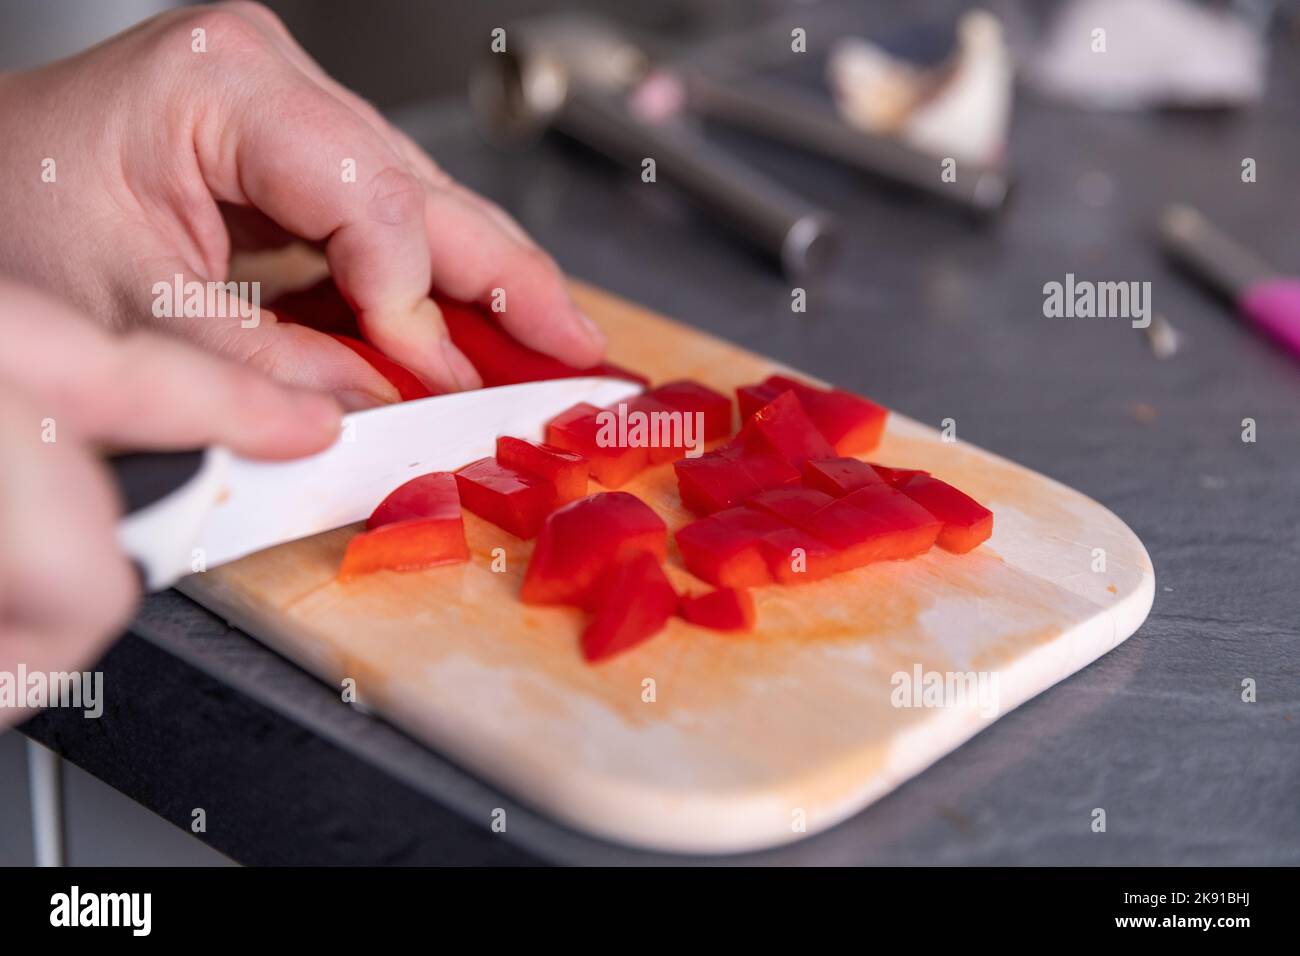 Bild von Frauenhänden, die roten Pfeffer schneiden Stockfoto